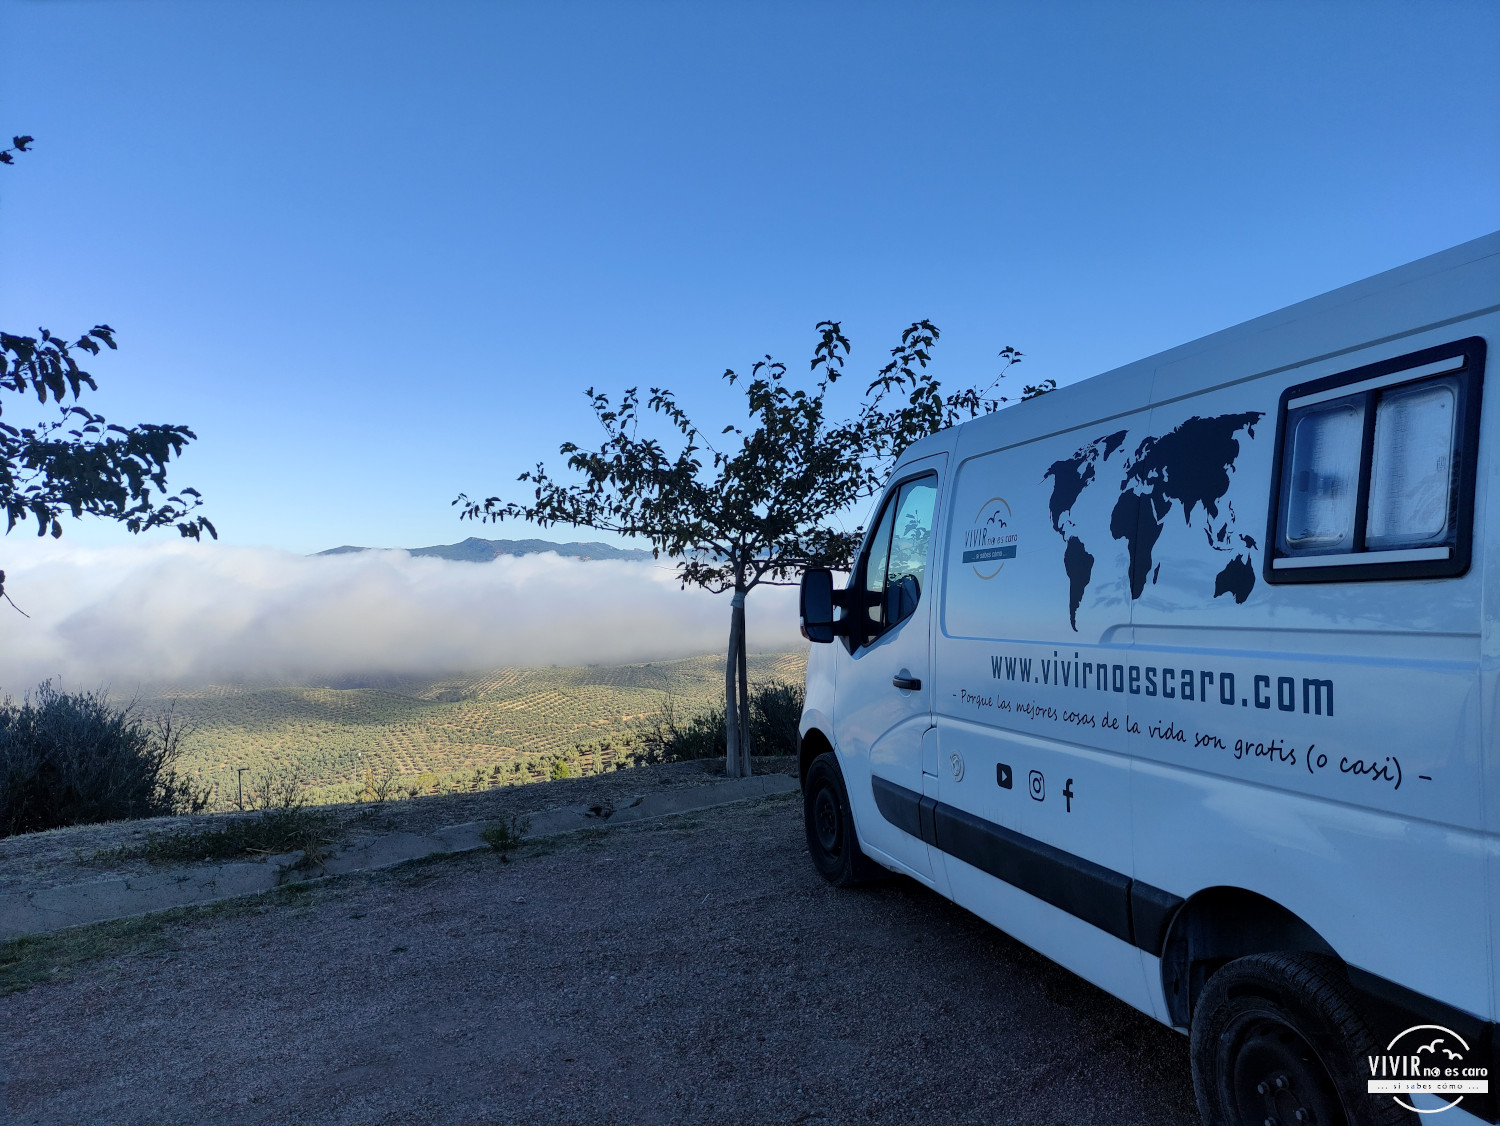 Parking La Iruela en furgoneta camper con vistas a las nubes